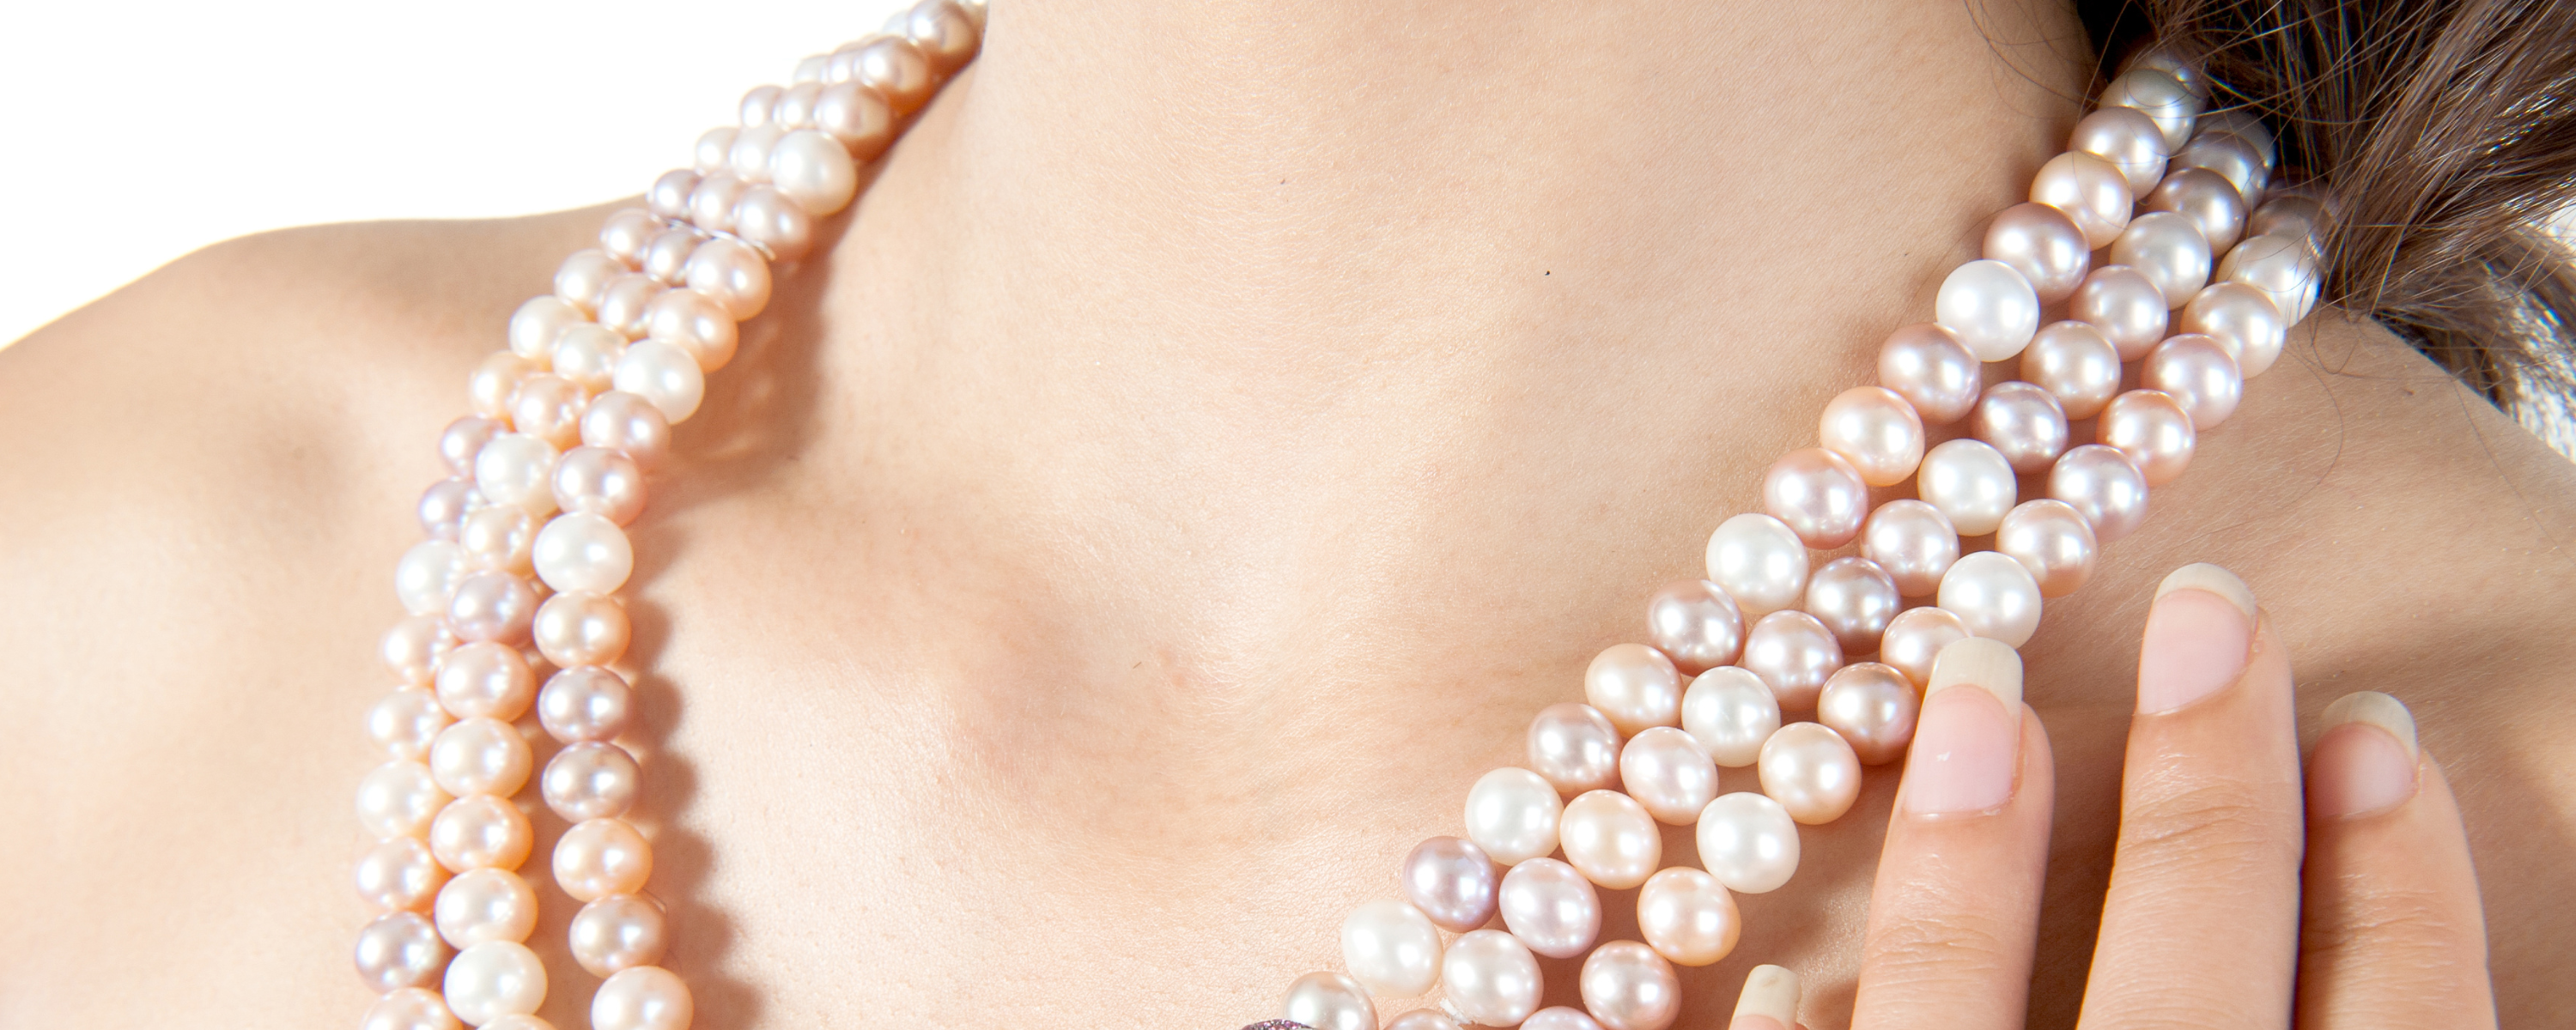 Femme avec un collier de perles